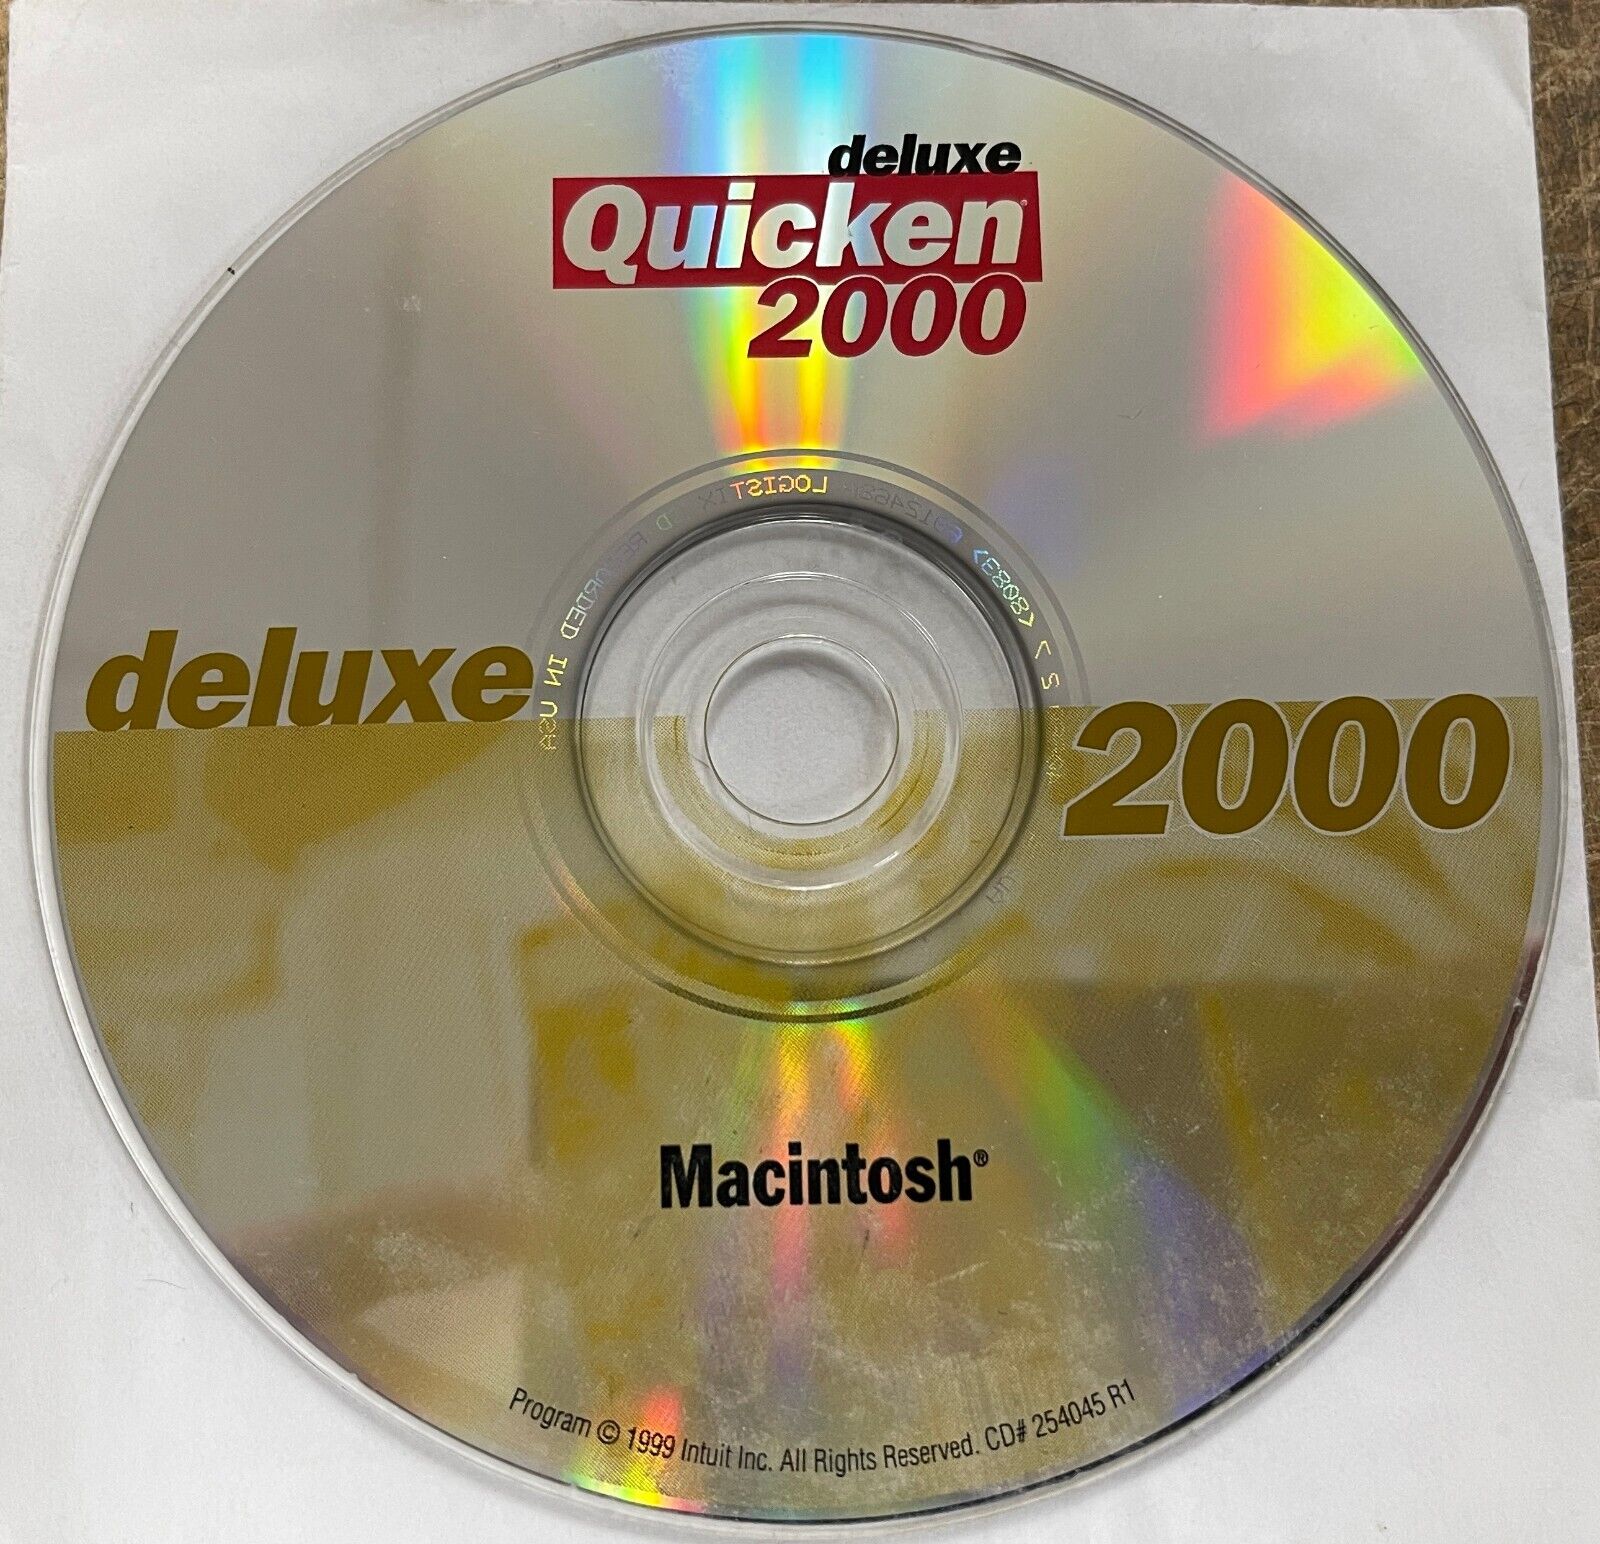 Vintage Quicken deluxe 2000 Macintosh